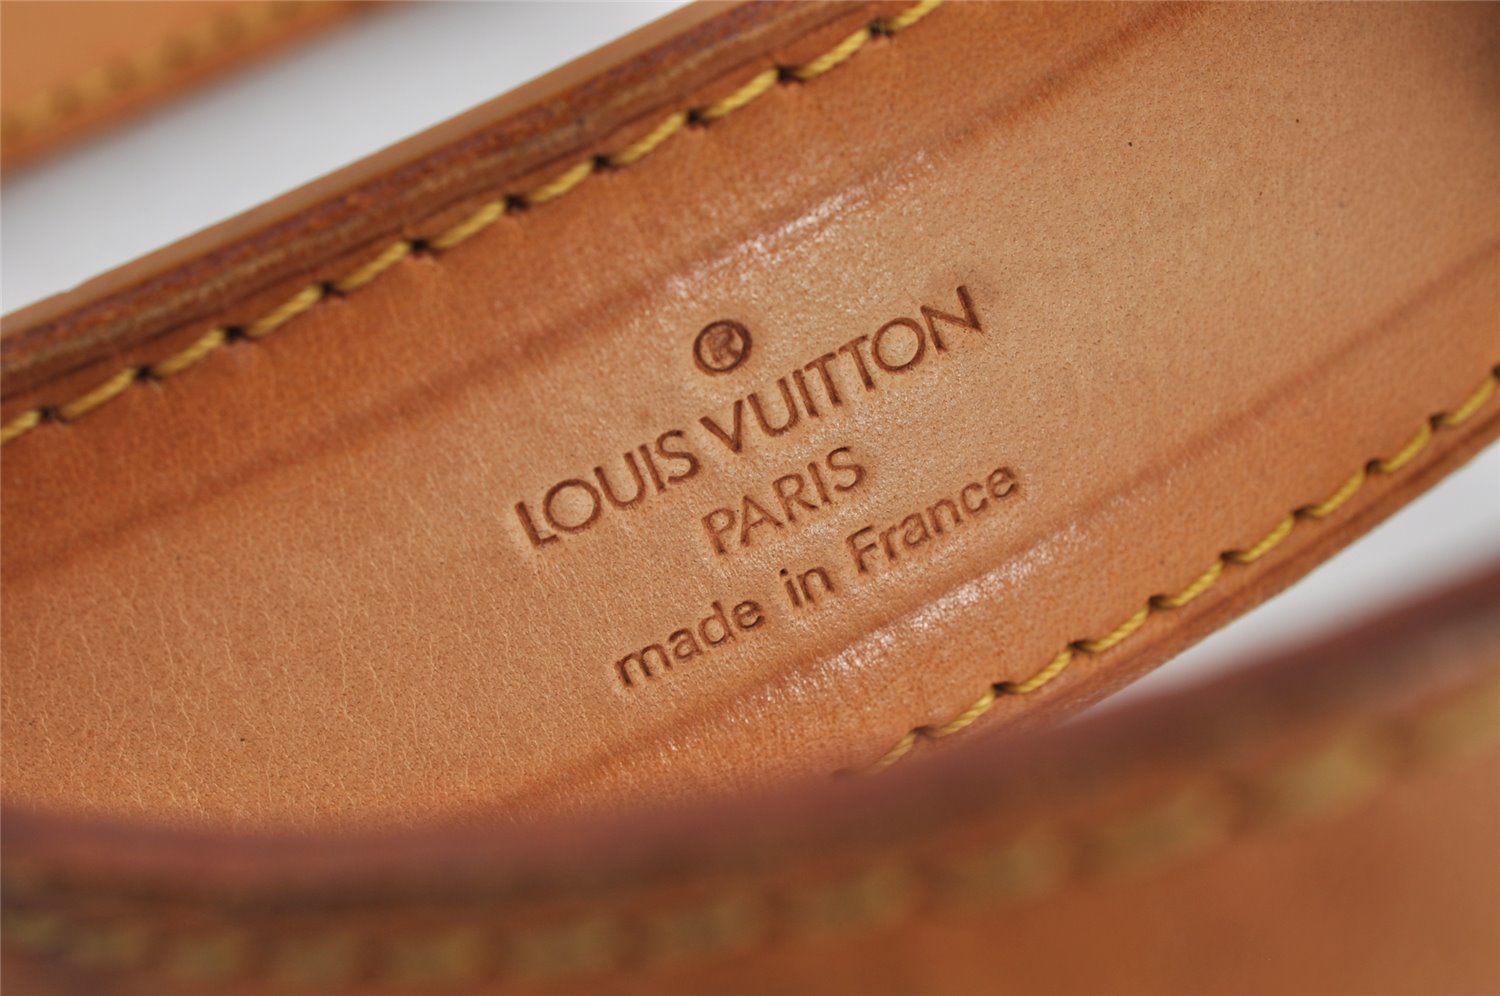 Authentic Louis Vuitton Leather Shoulder Strap Beige 36.2-43.3